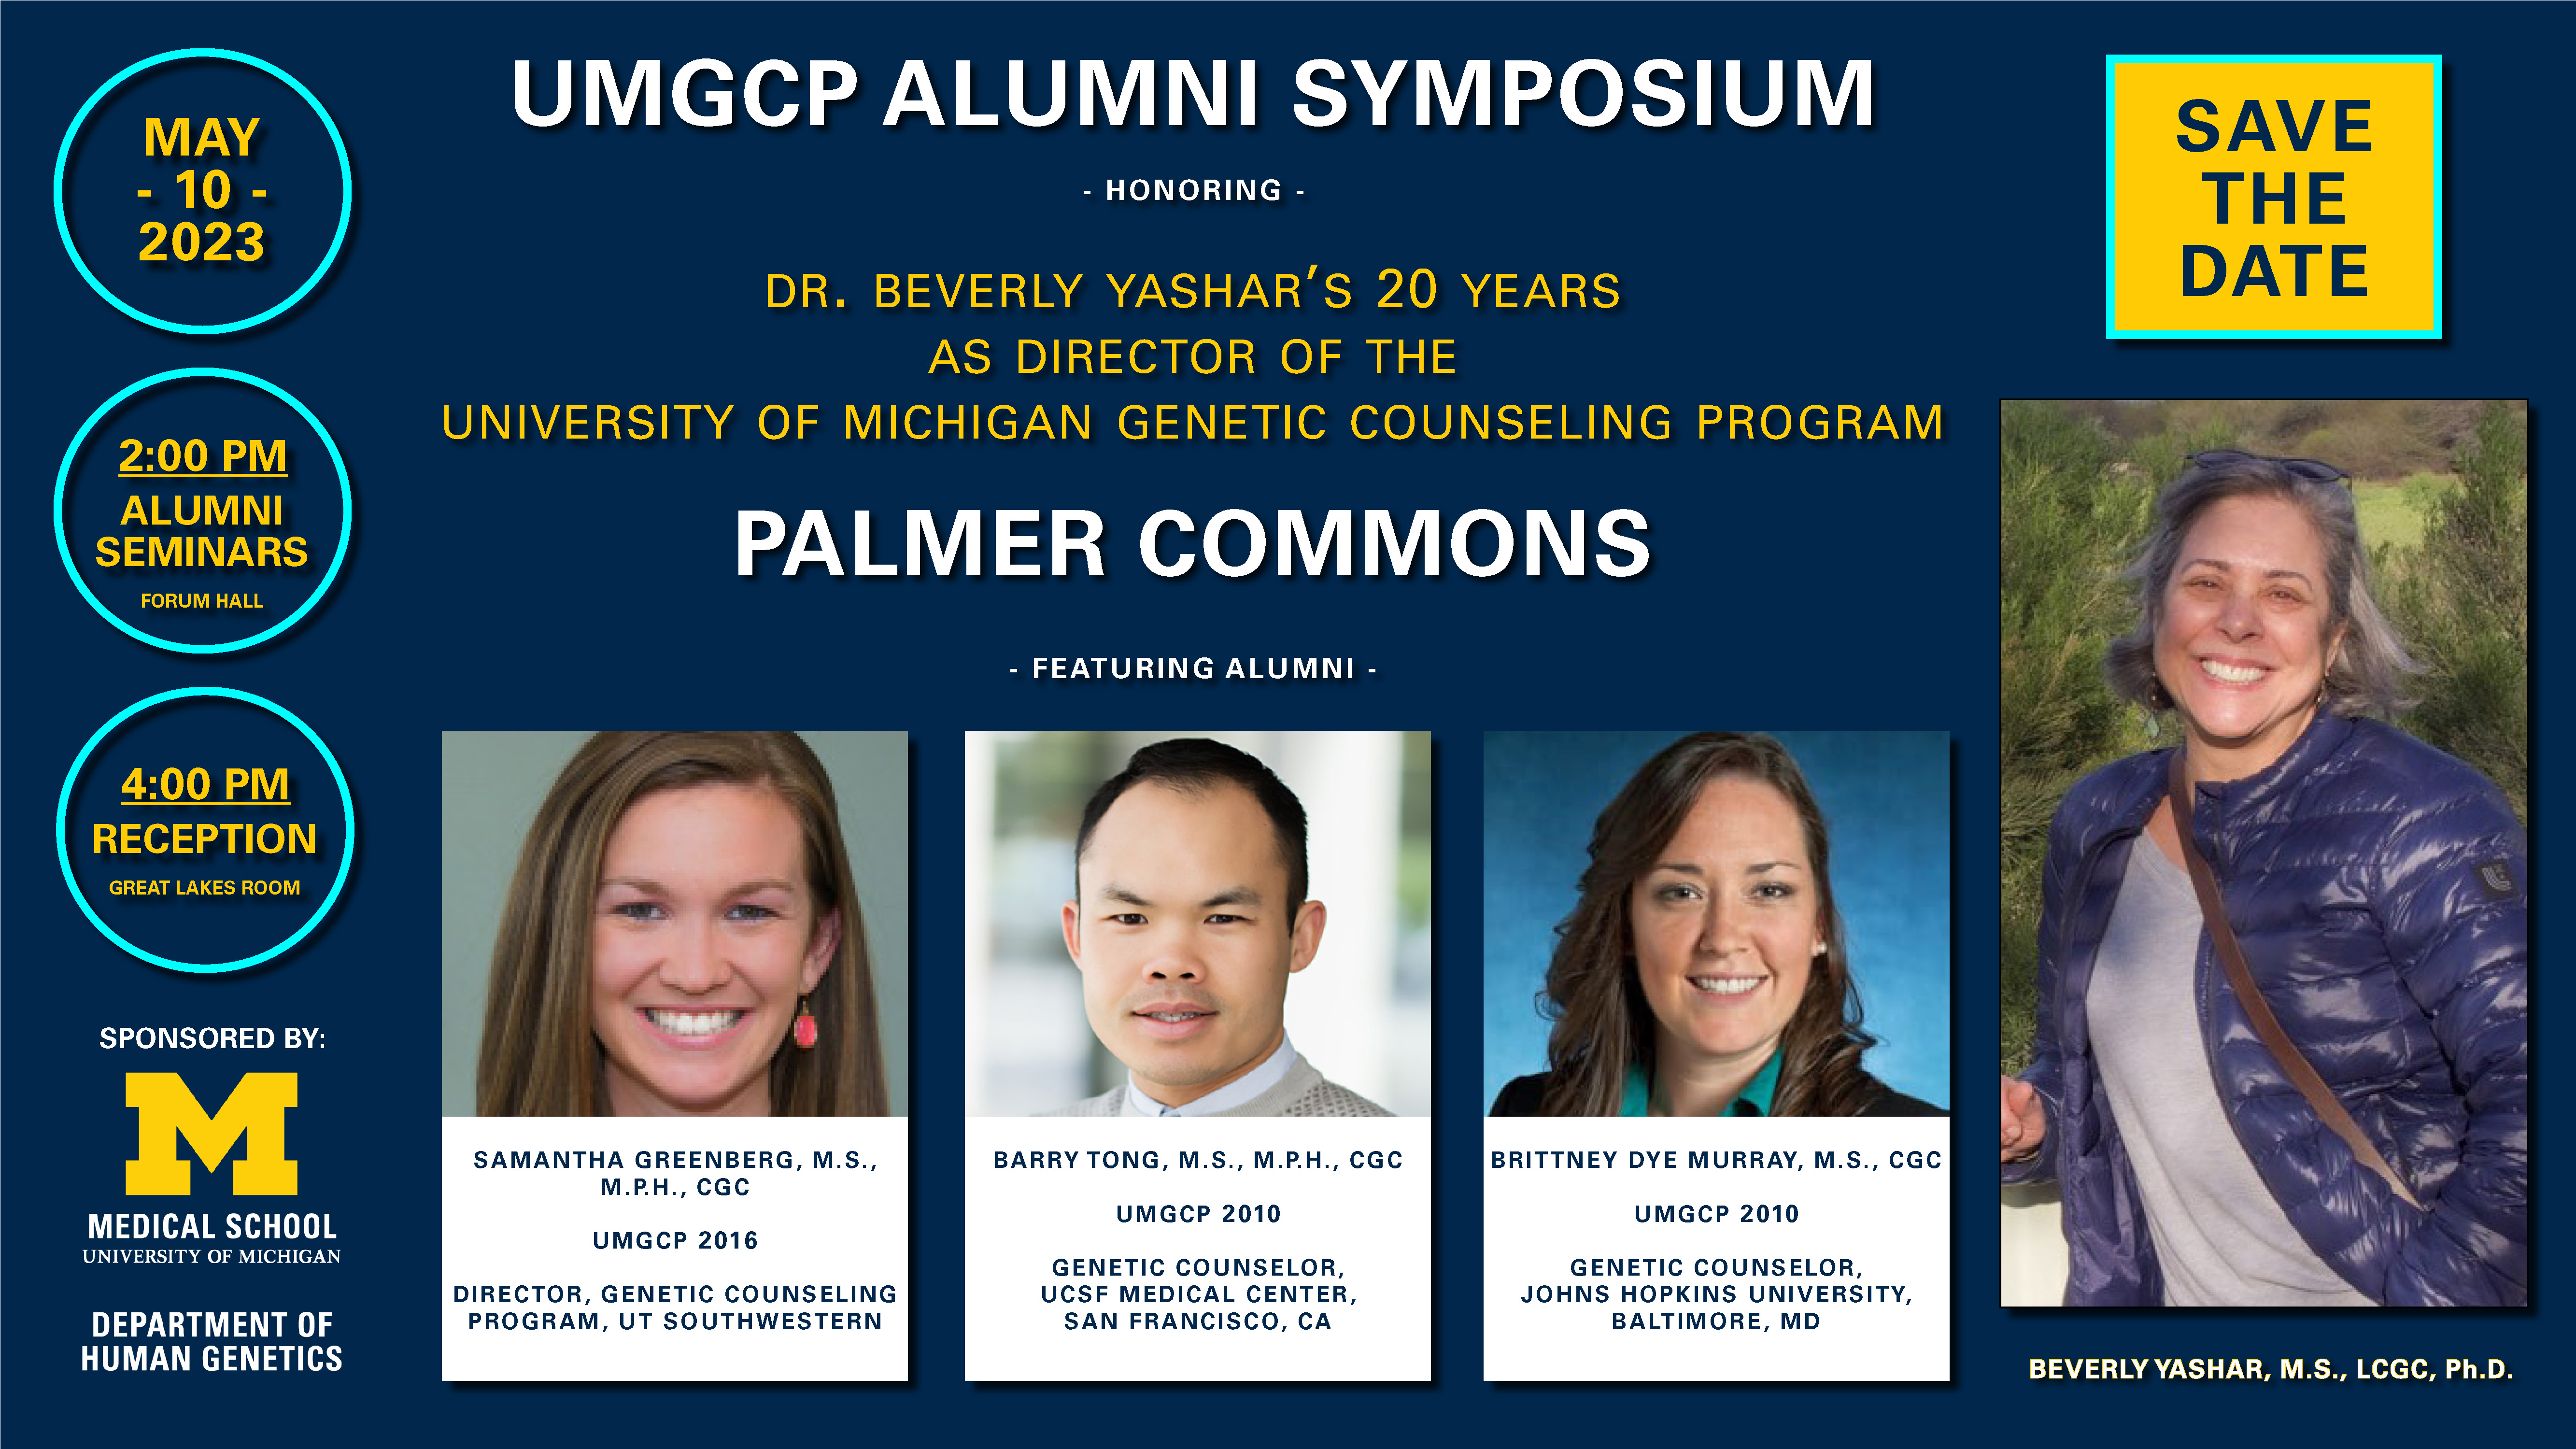 UMGCP Alumni Symposium